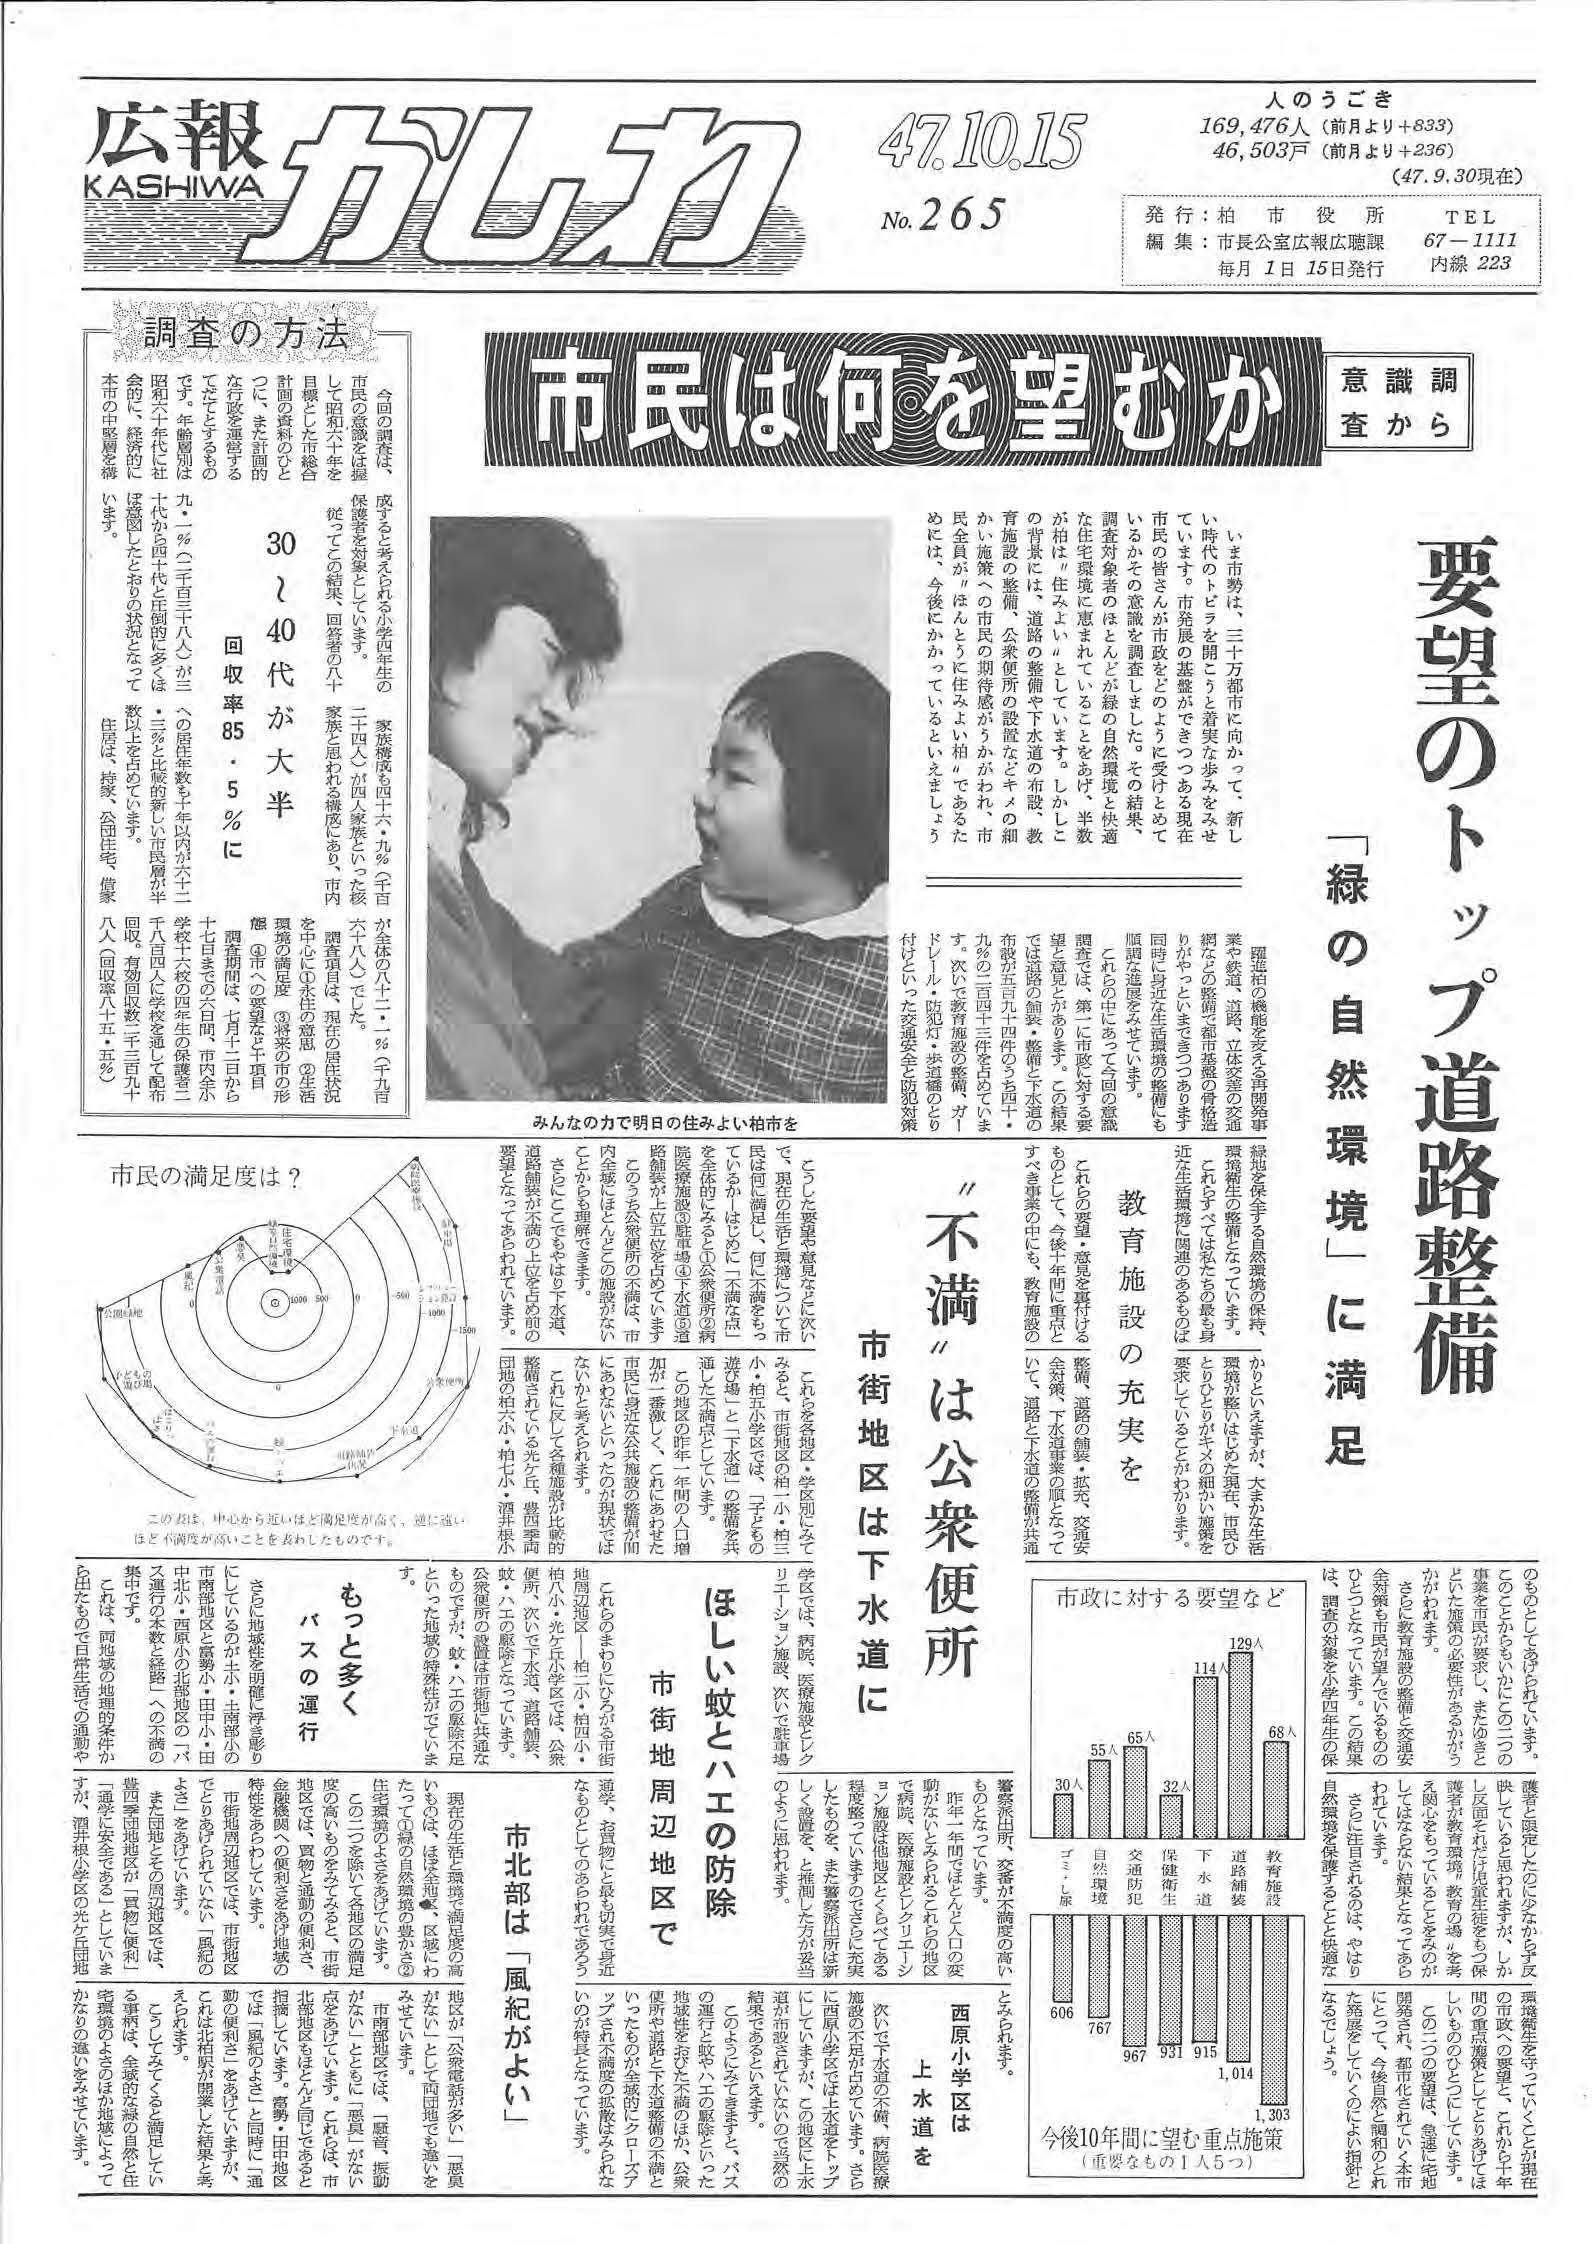 広報かしわ　昭和47年10月15日発行　265号